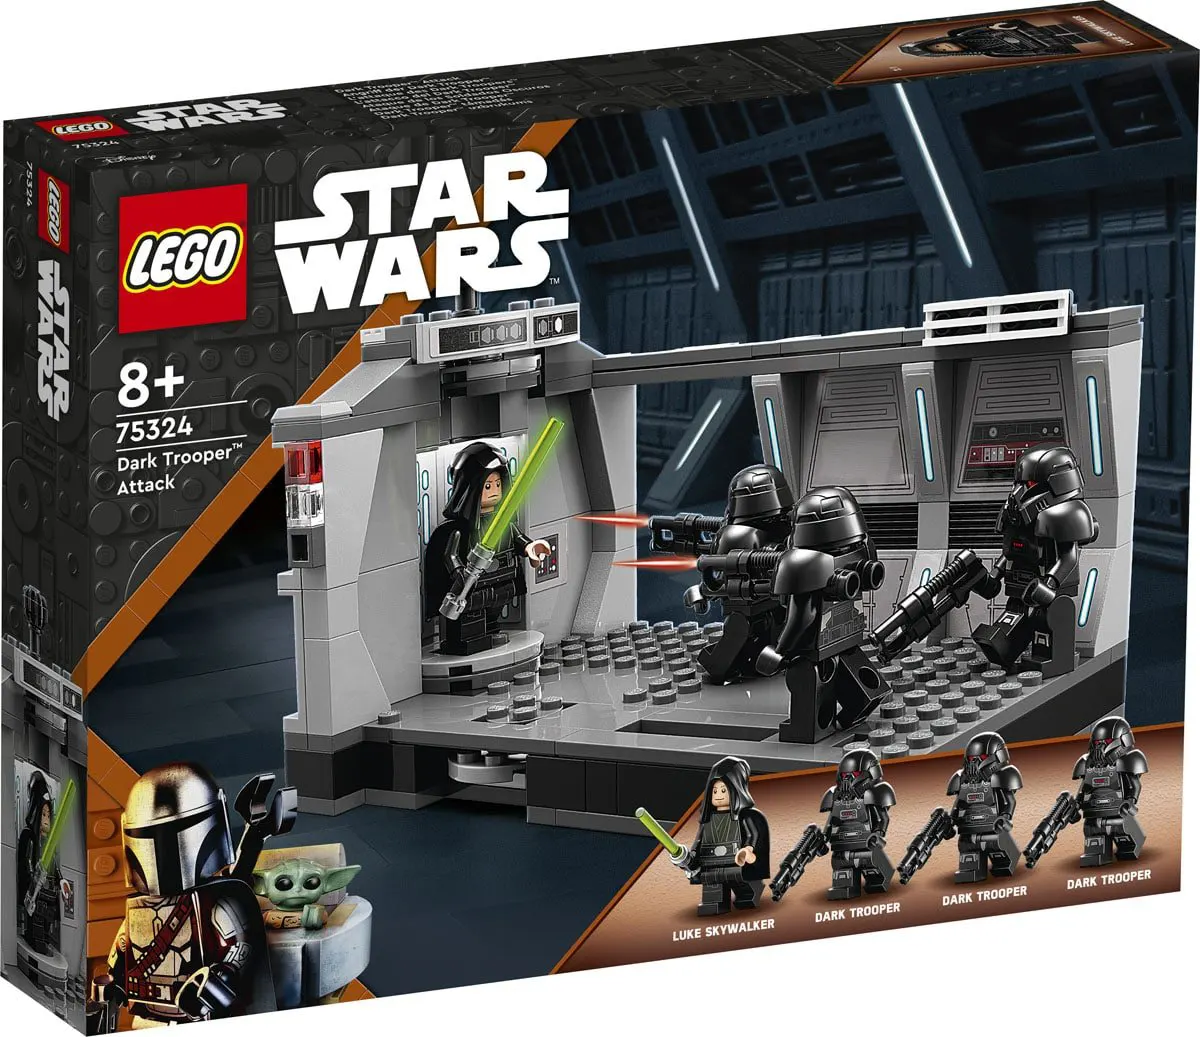 LEGO Star Wars Dark Trooper™ Attack 75324